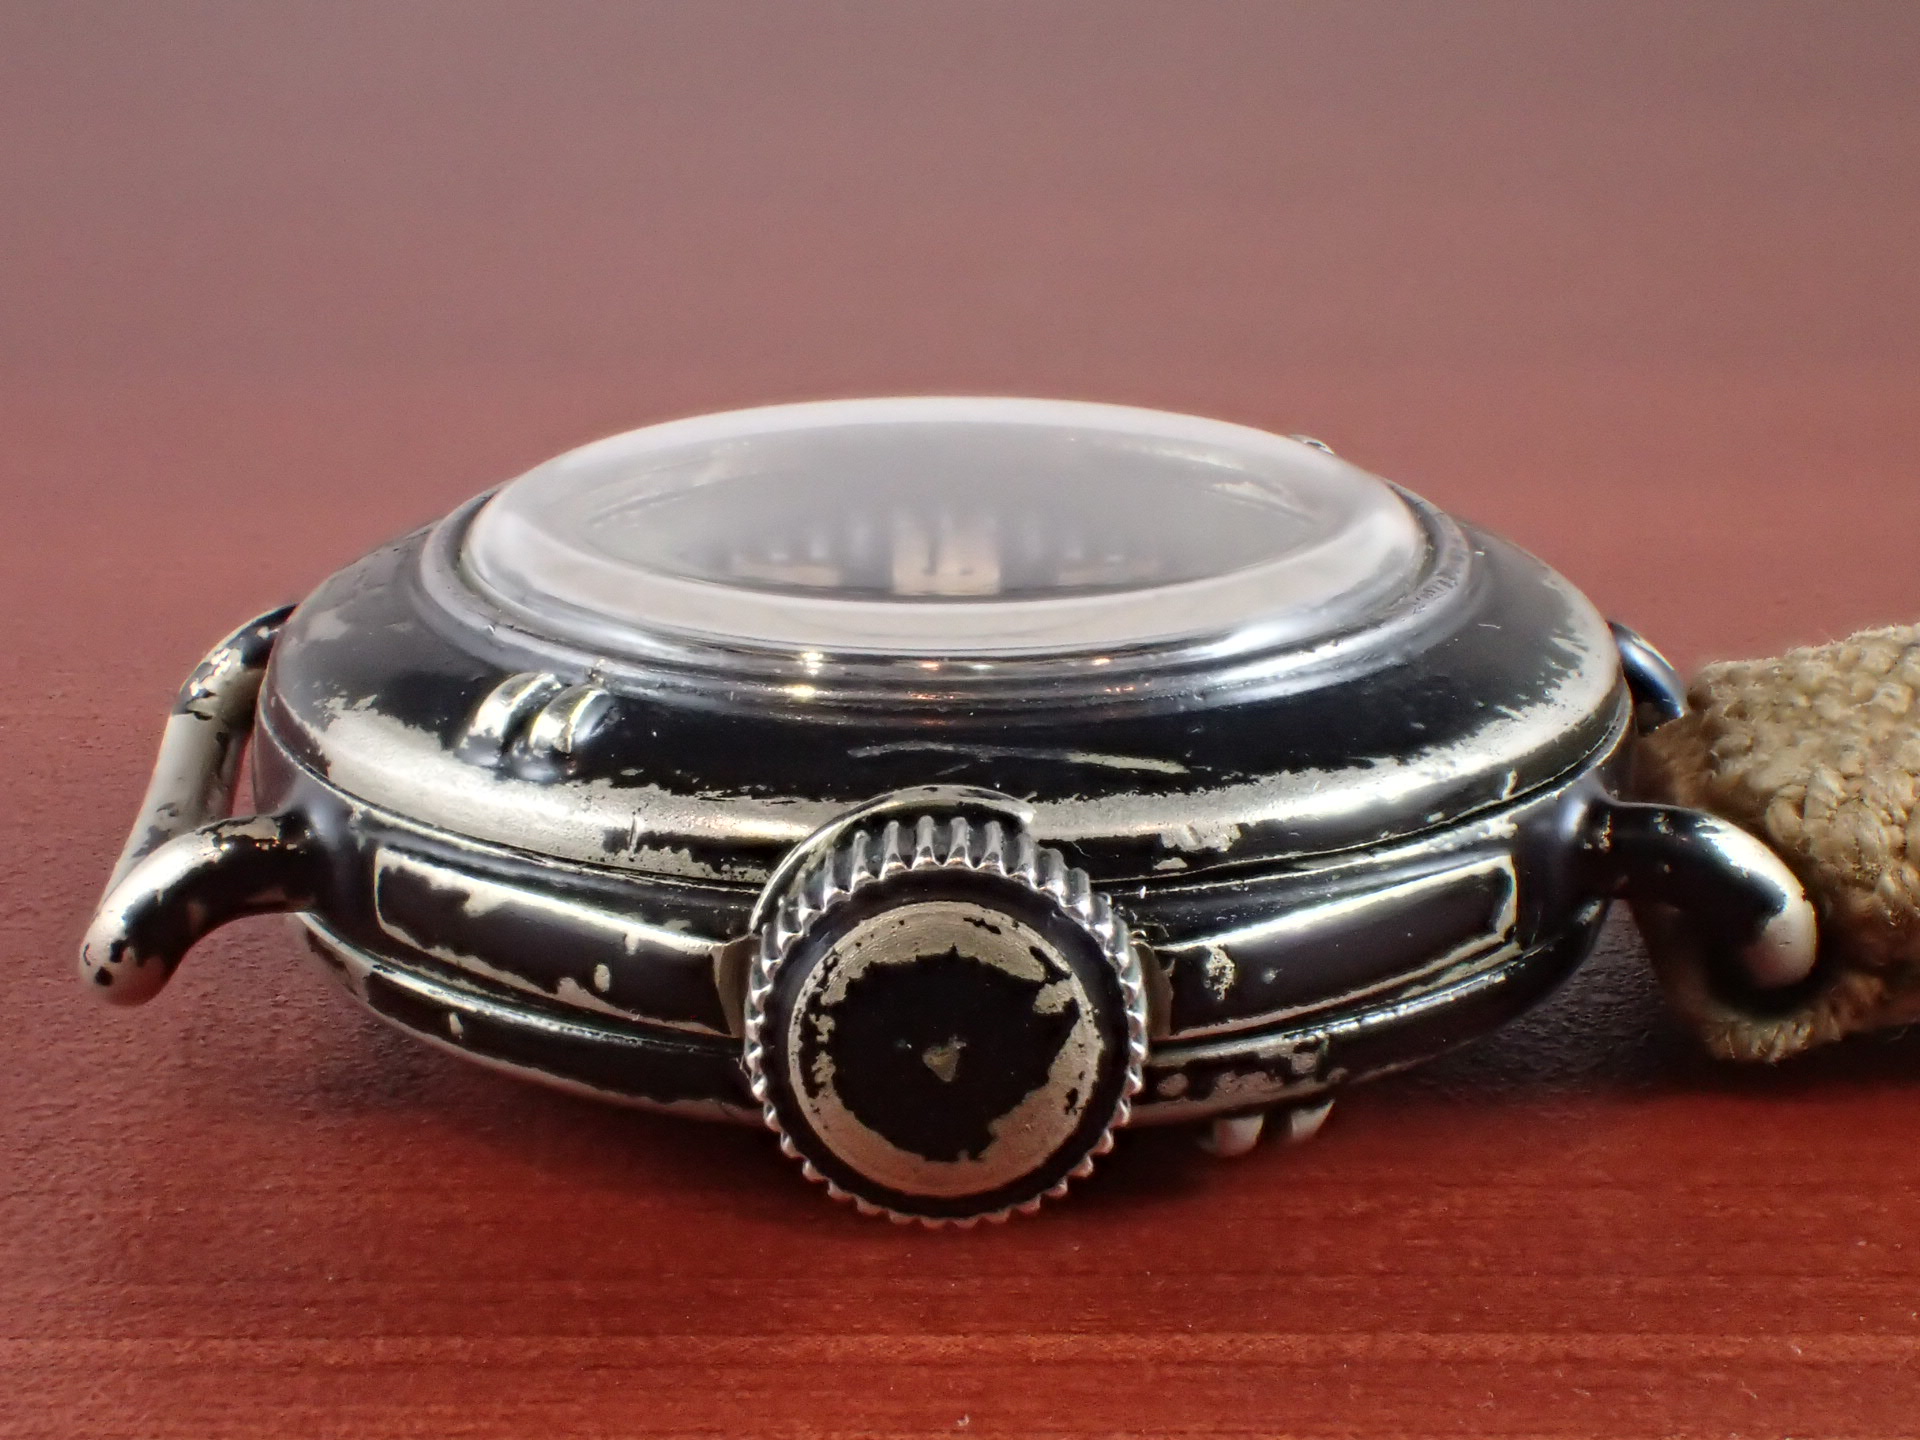 レア物 ヴィンテージ 大正 昭和初期 戦前 戦後 汎用 腕時計 時計ケース ウォッチ ケース No.860